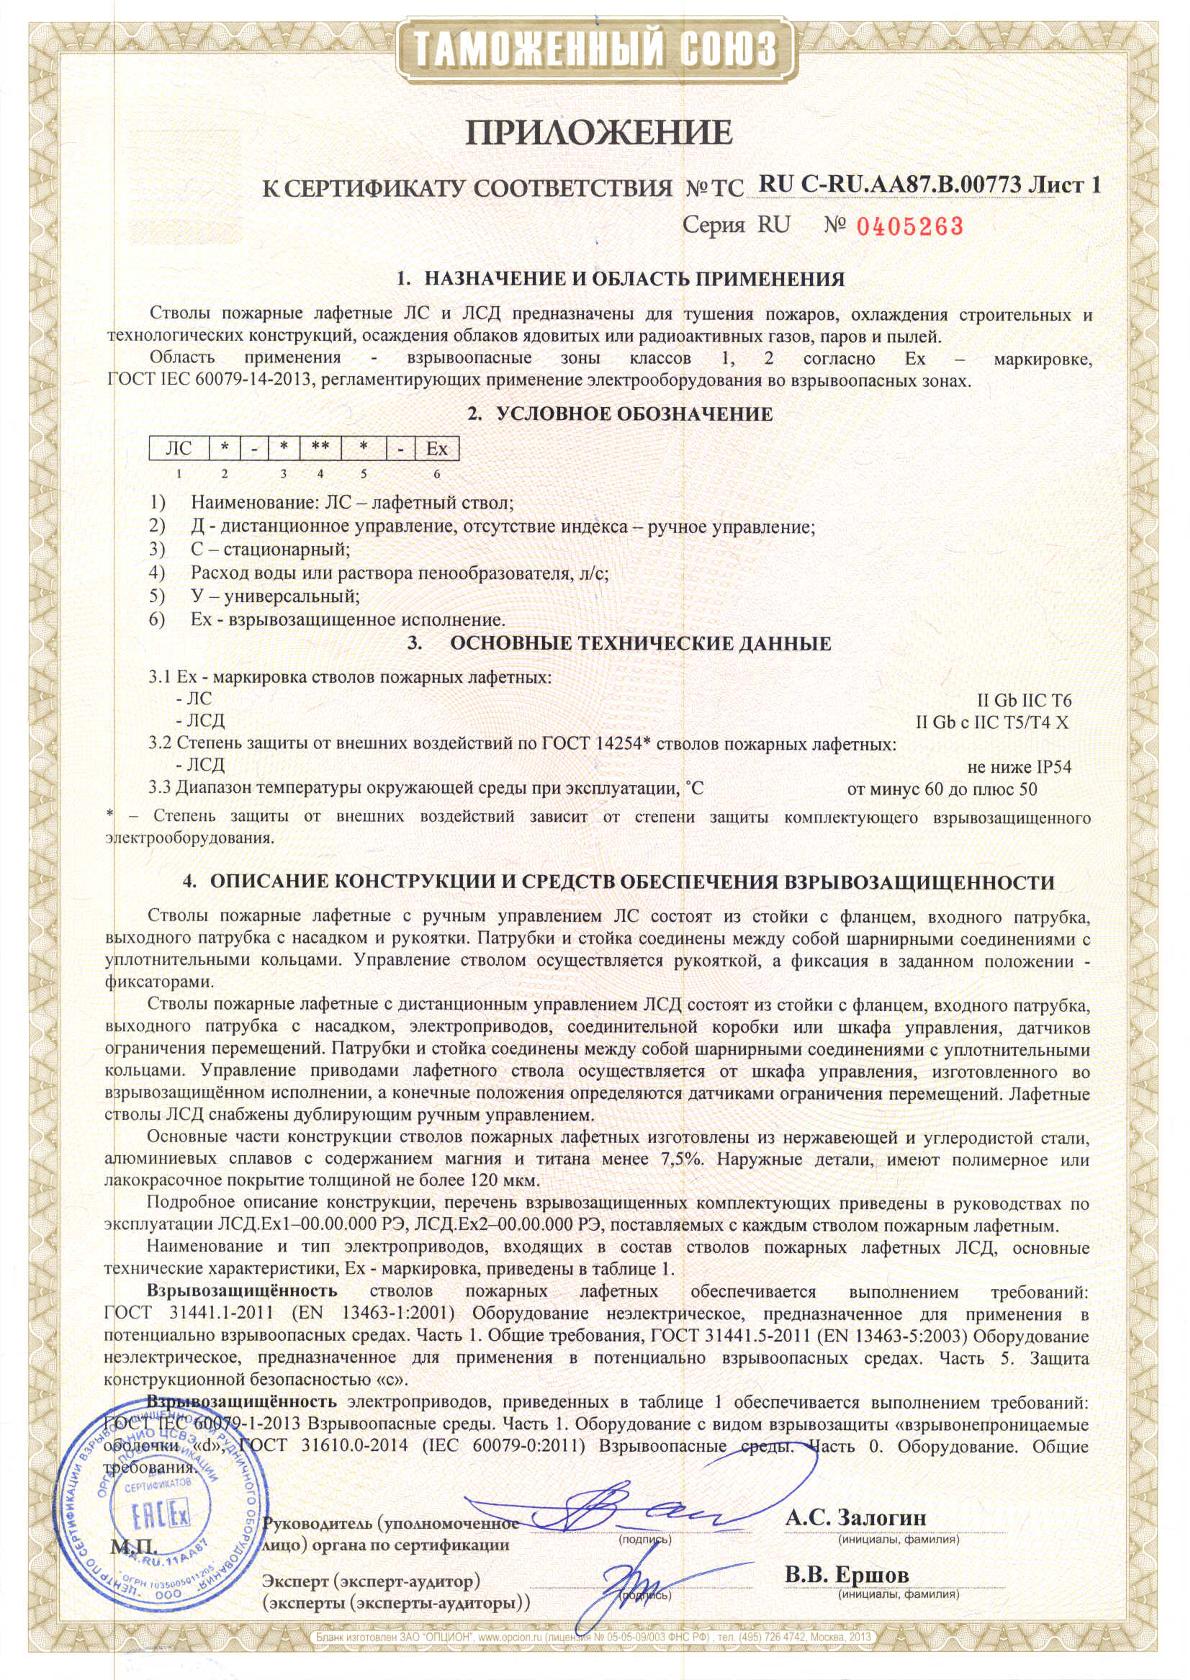 Сертификат соответствия стволы пожарные лафетные ЛС, ЛСД приложение лист 1